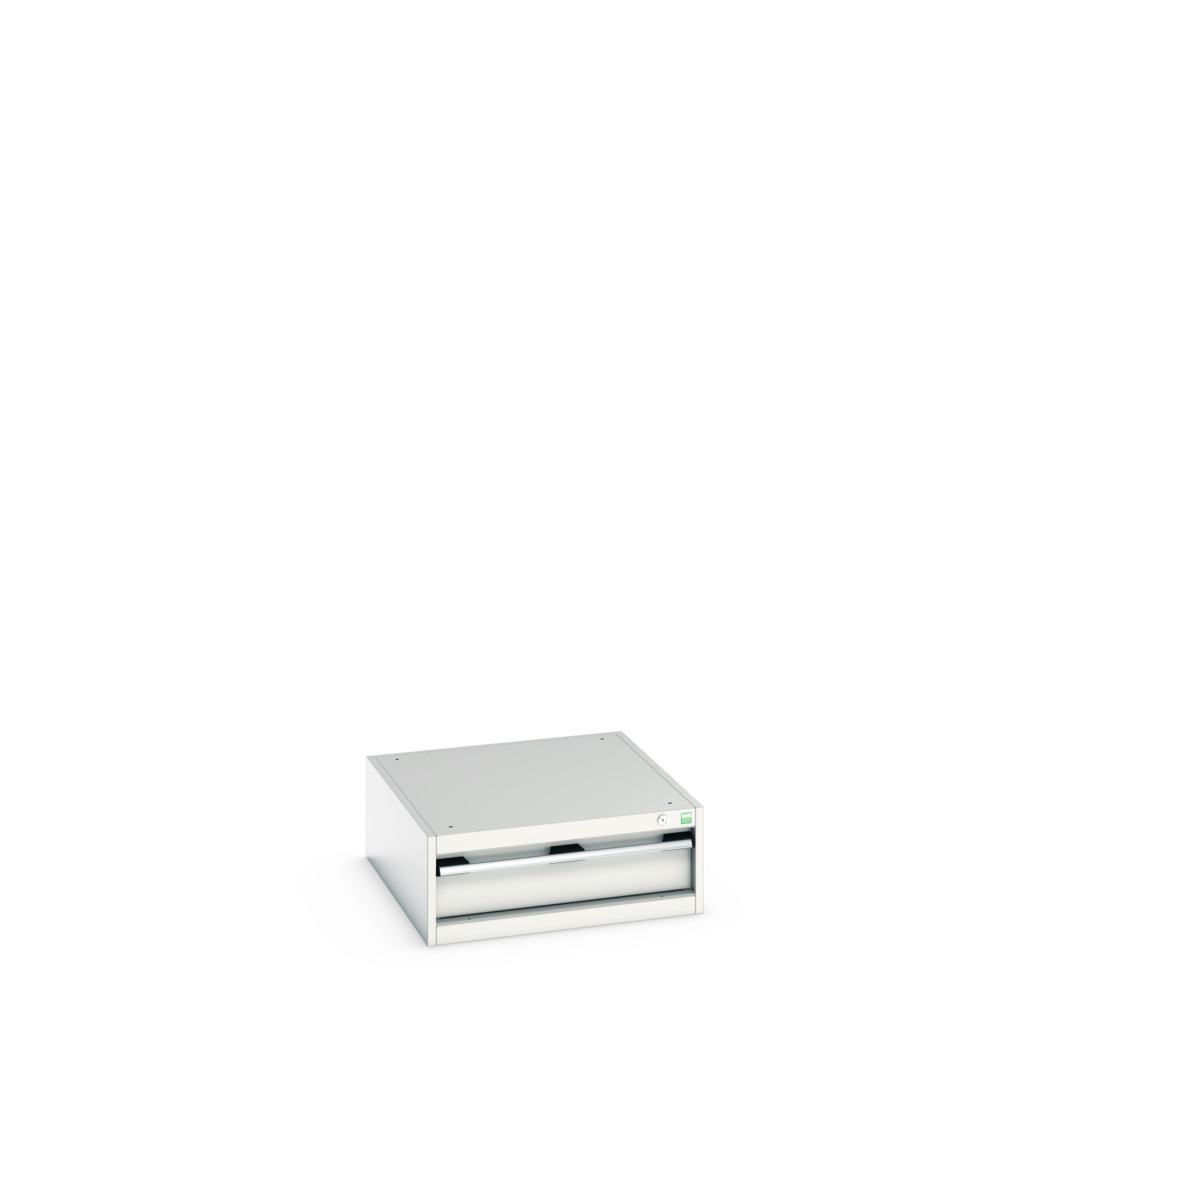 40027092.16V - cubio drawer cabinet